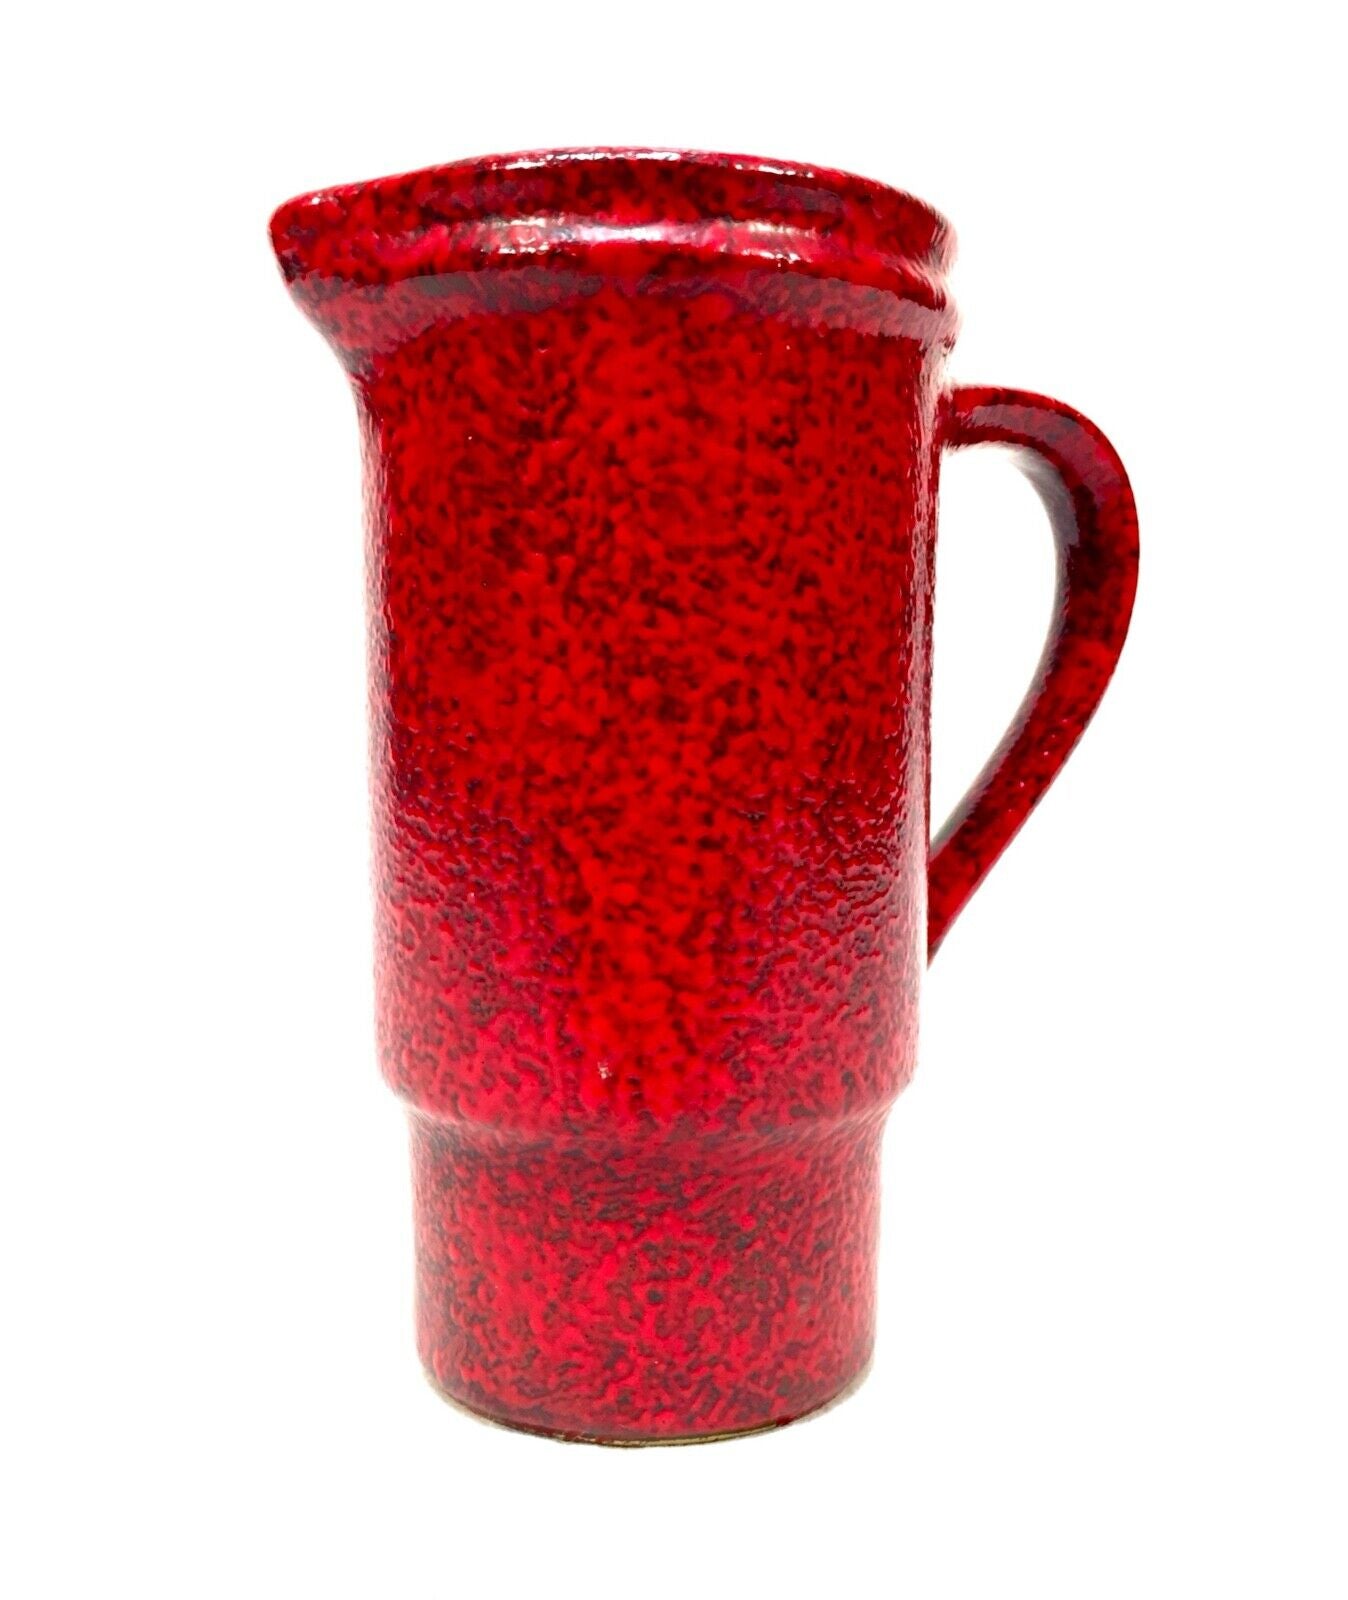 Vintage West German Pottery Vase / Jug / Mottled Red & Black Retro 1970s